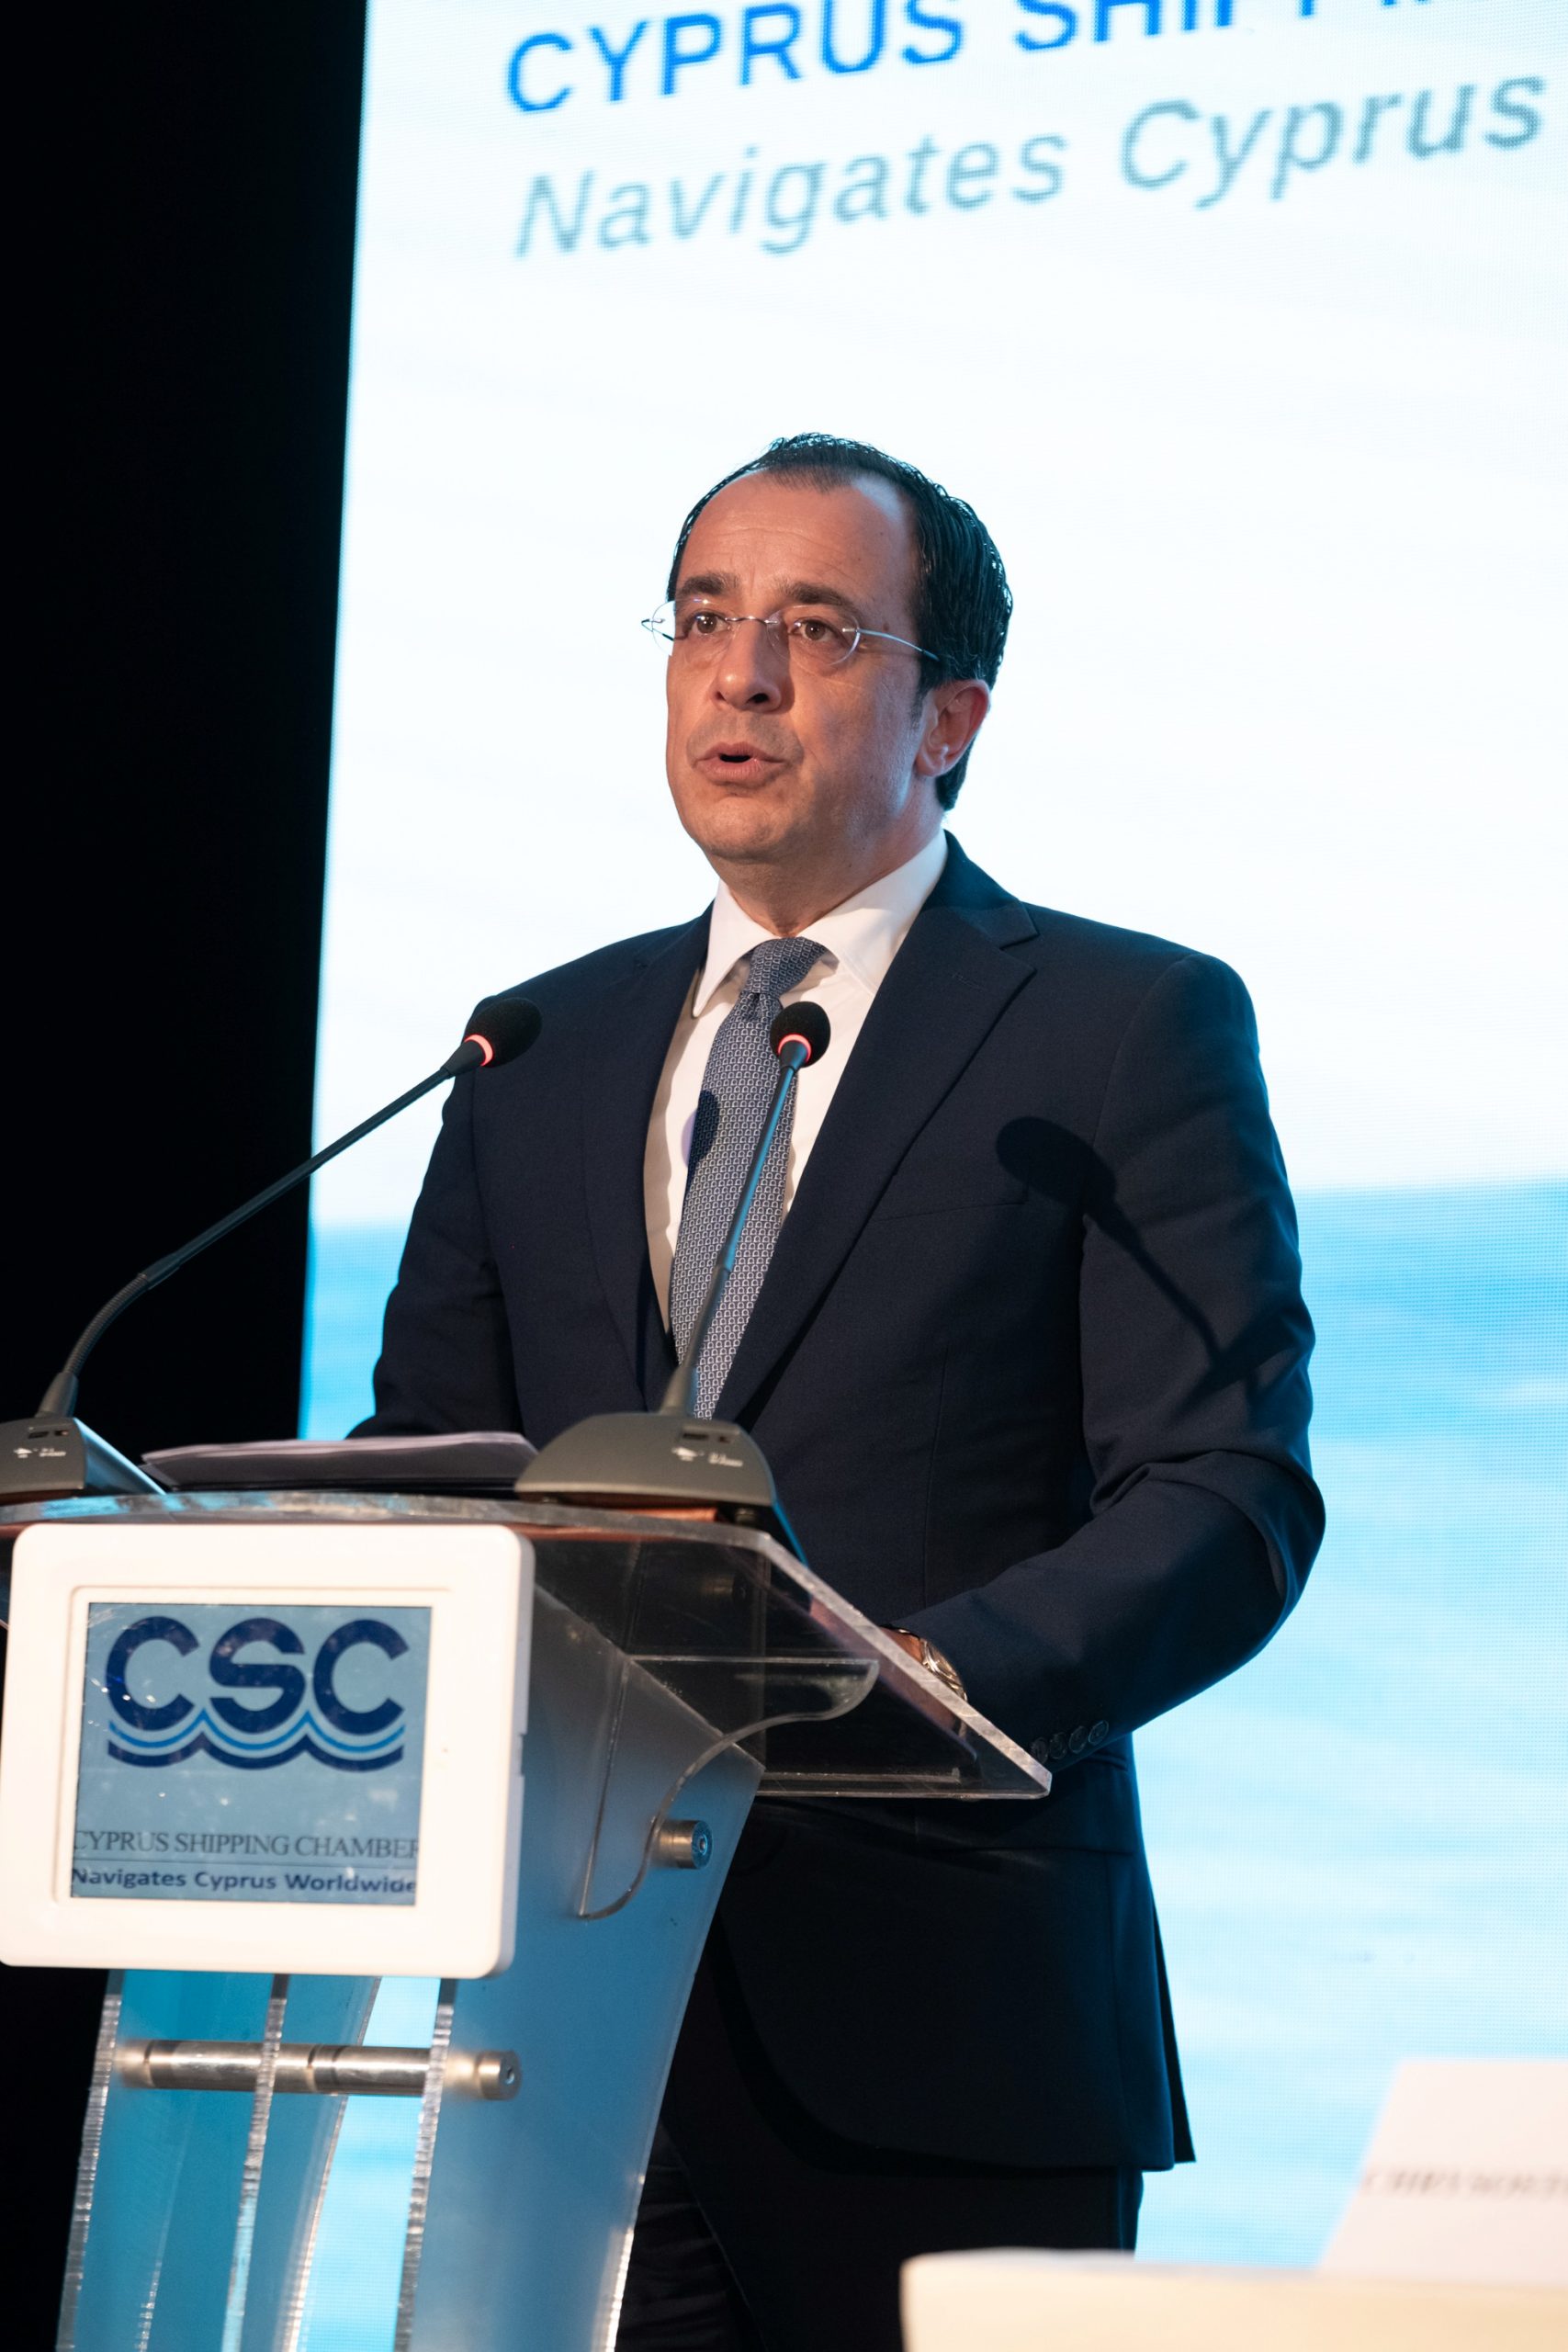 Κύπρος: Προτείνει τη σύσταση Ευρωπαίου Επιτρόπου αρμόδιο για τη ναυτιλία